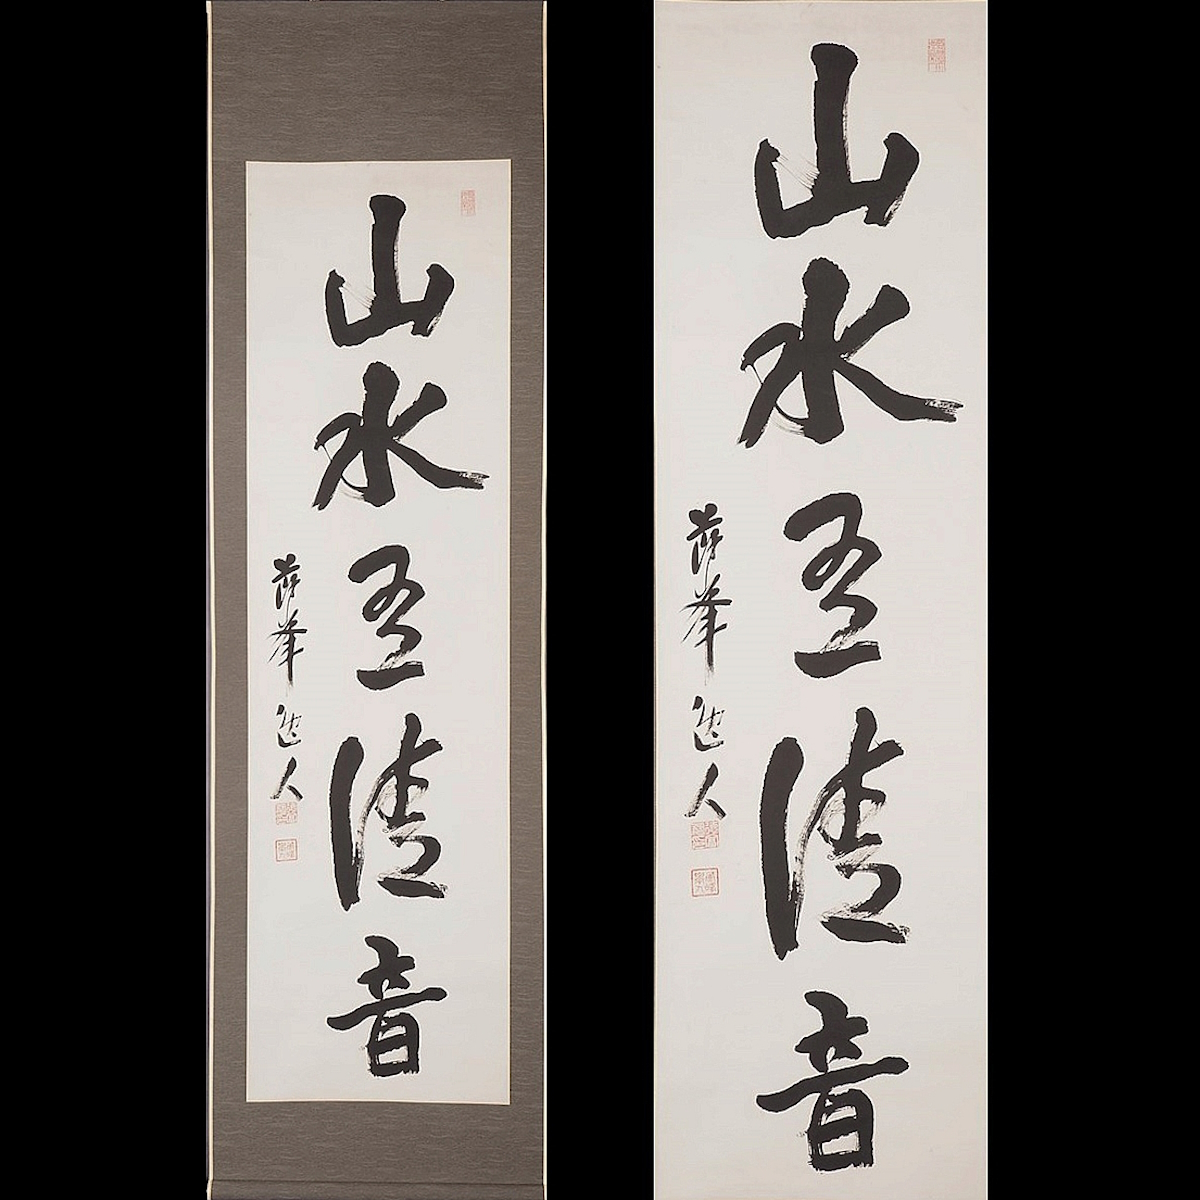 [Authentisch] [Watarikan] [Tokutomi Soho] 11632 Hängerolle, einzeilige Kalligraphie, Berge und Flüsse haben reine Klänge, Kasten, Papier, Kumamoto, Higo, Historiker, eingeschrieben, Kunstwerk, Buch, Hängerolle